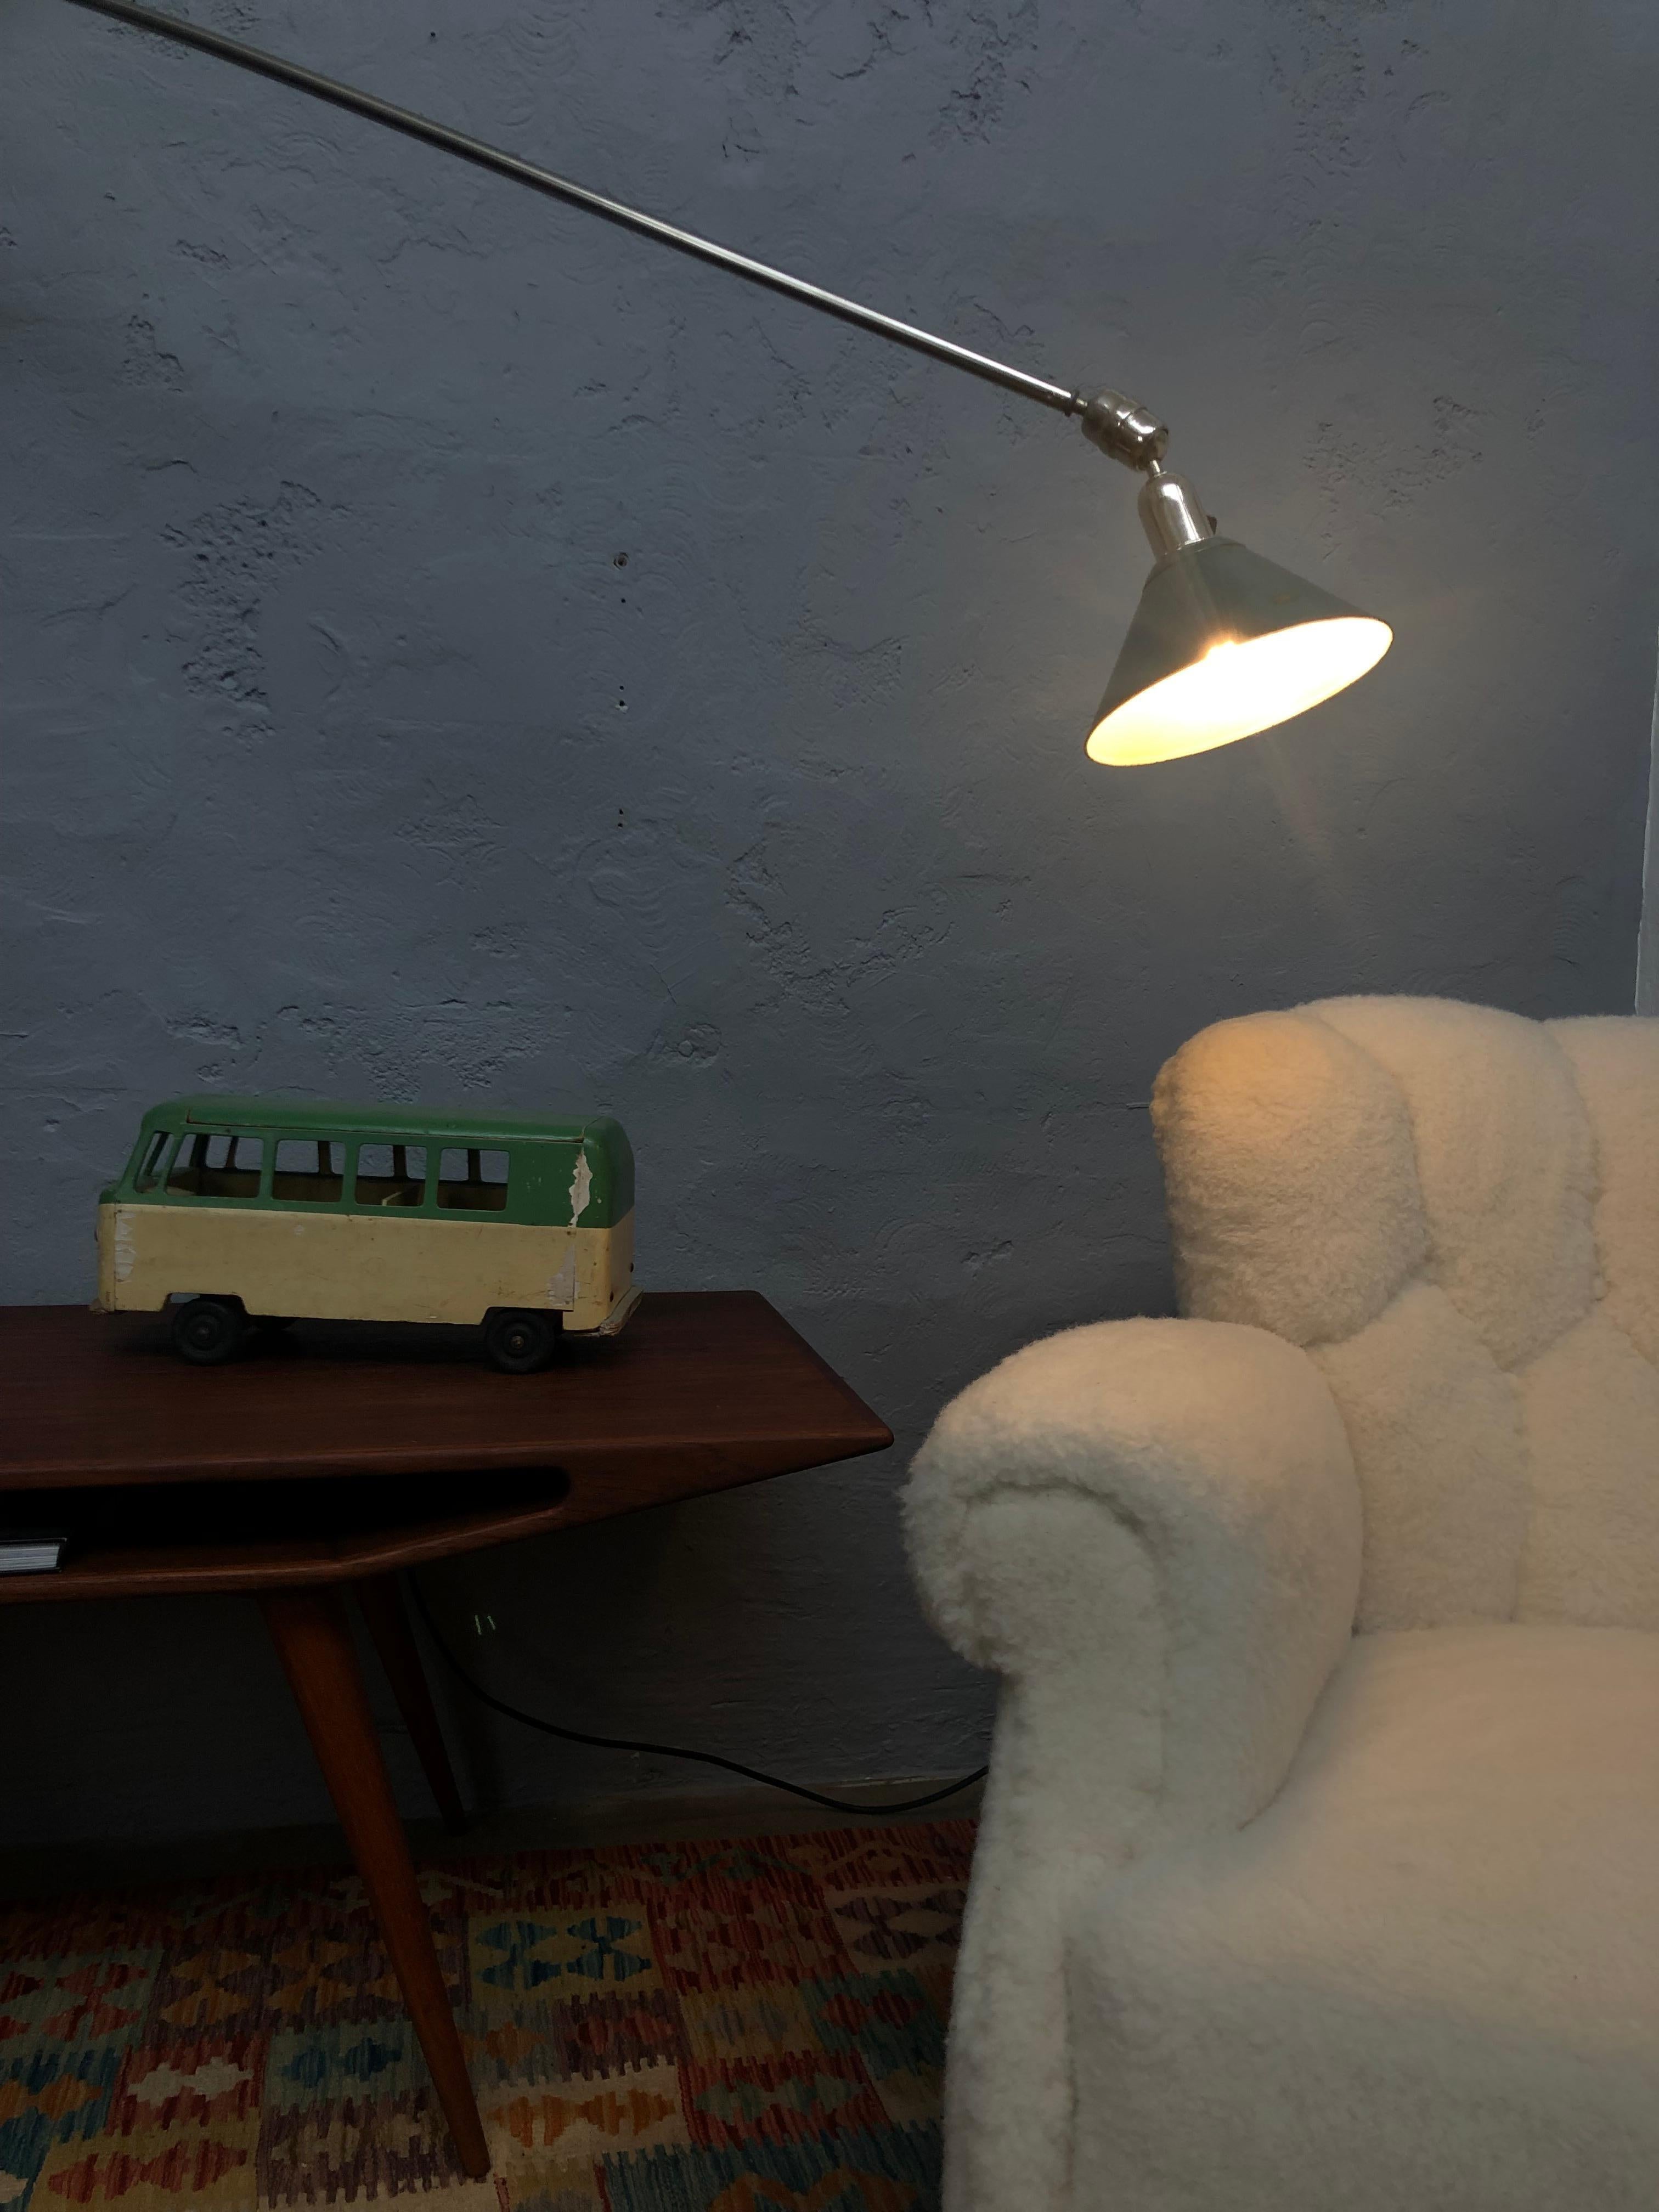 Triplex Industrial Lamp Designed by Johan Petter Johanson in the 1930s 4